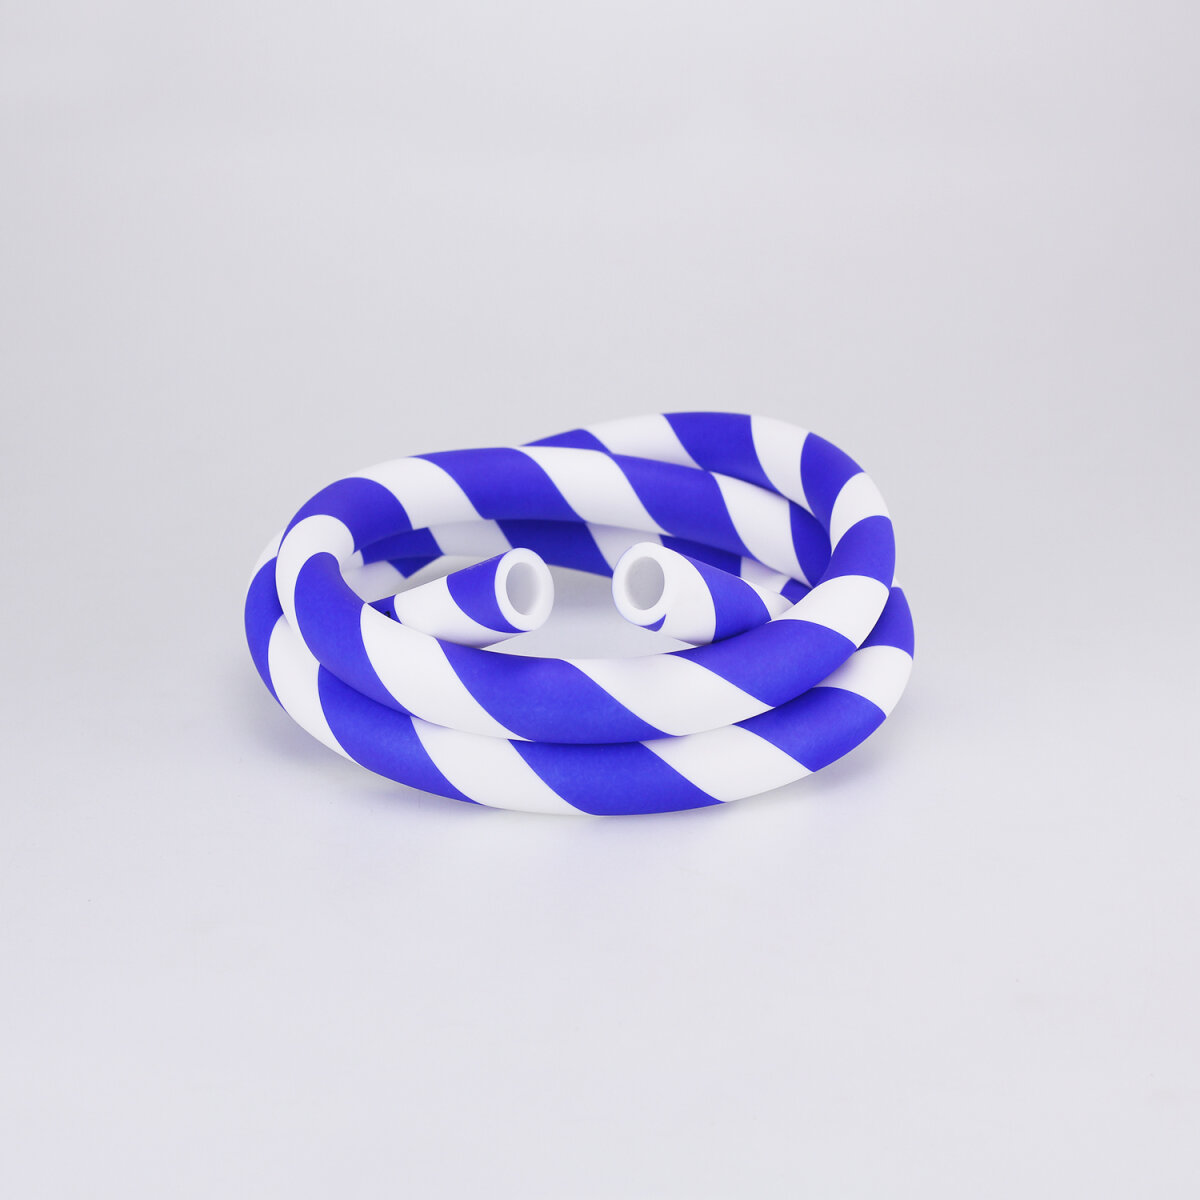 produkt-silikonschlauch-matt-striped-blau-weiss-